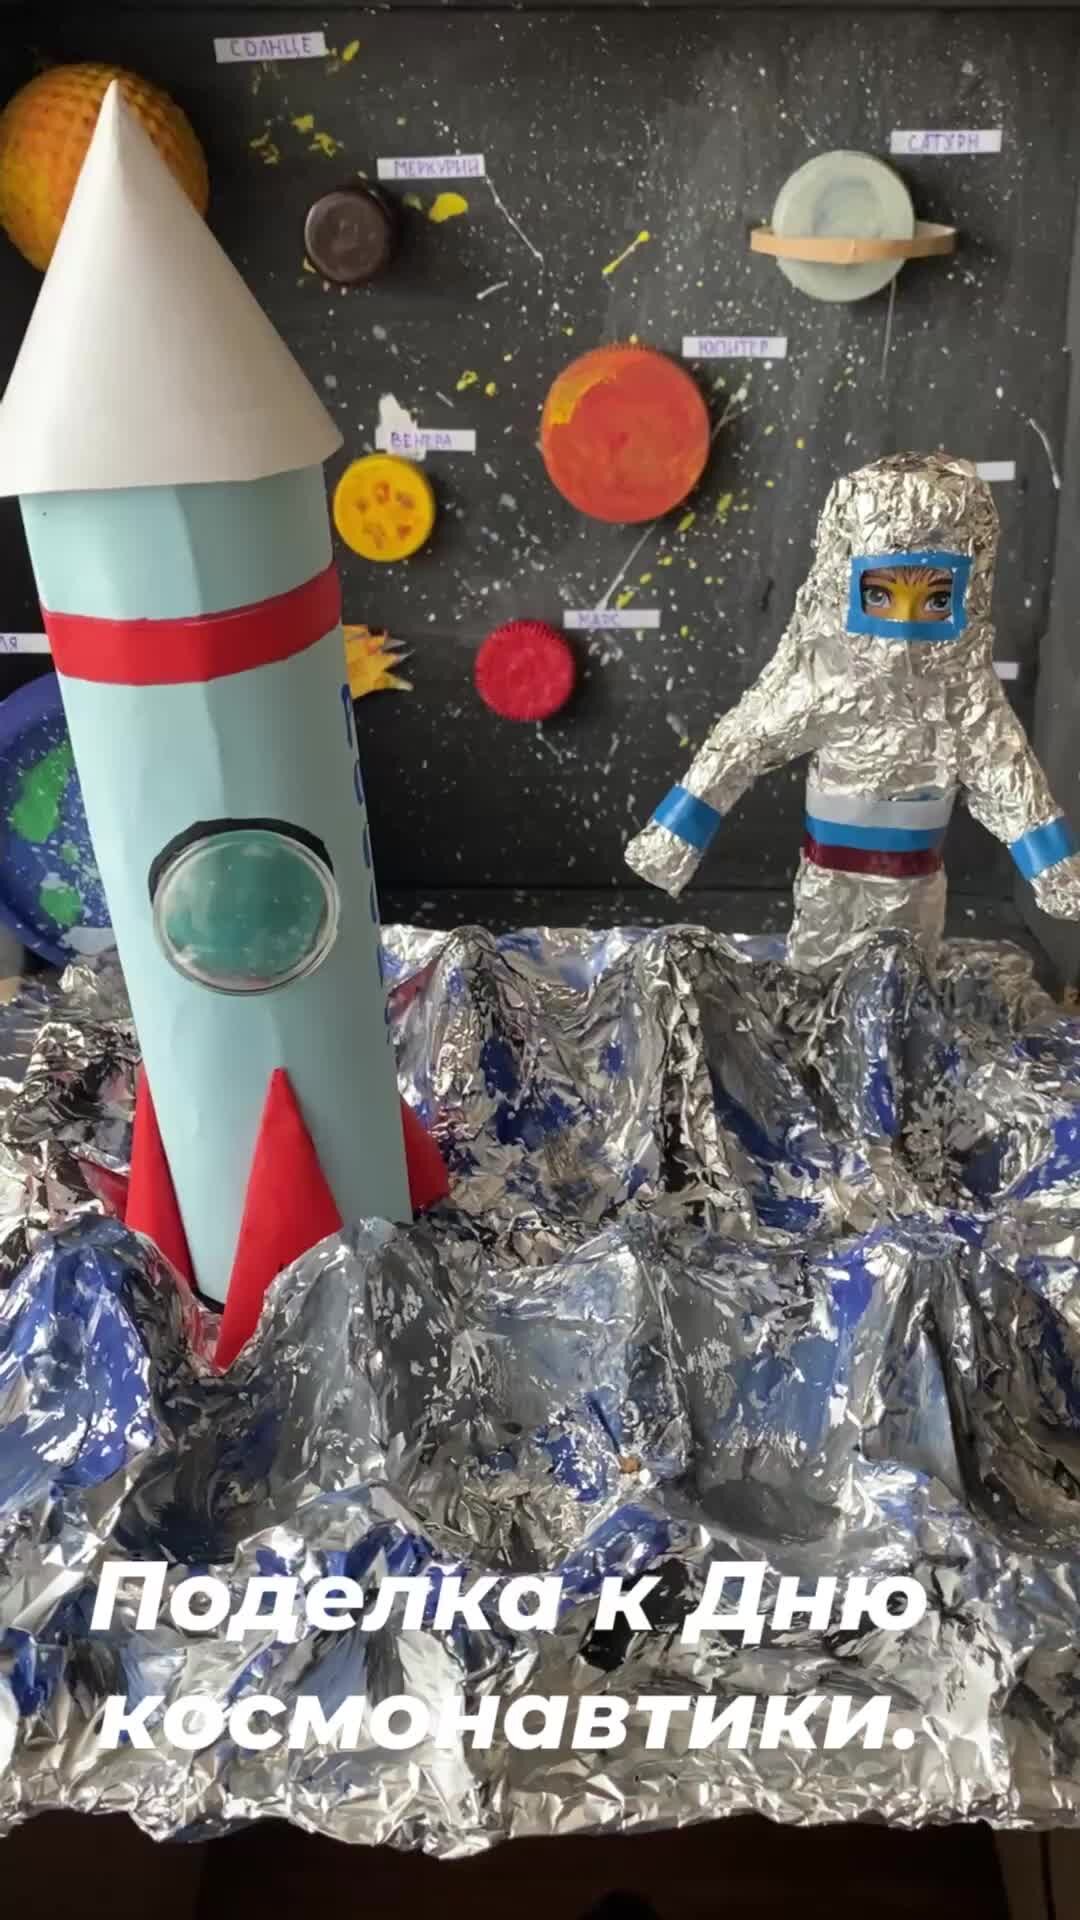 Поделки в детский сад на День космонавтики: 100 идей